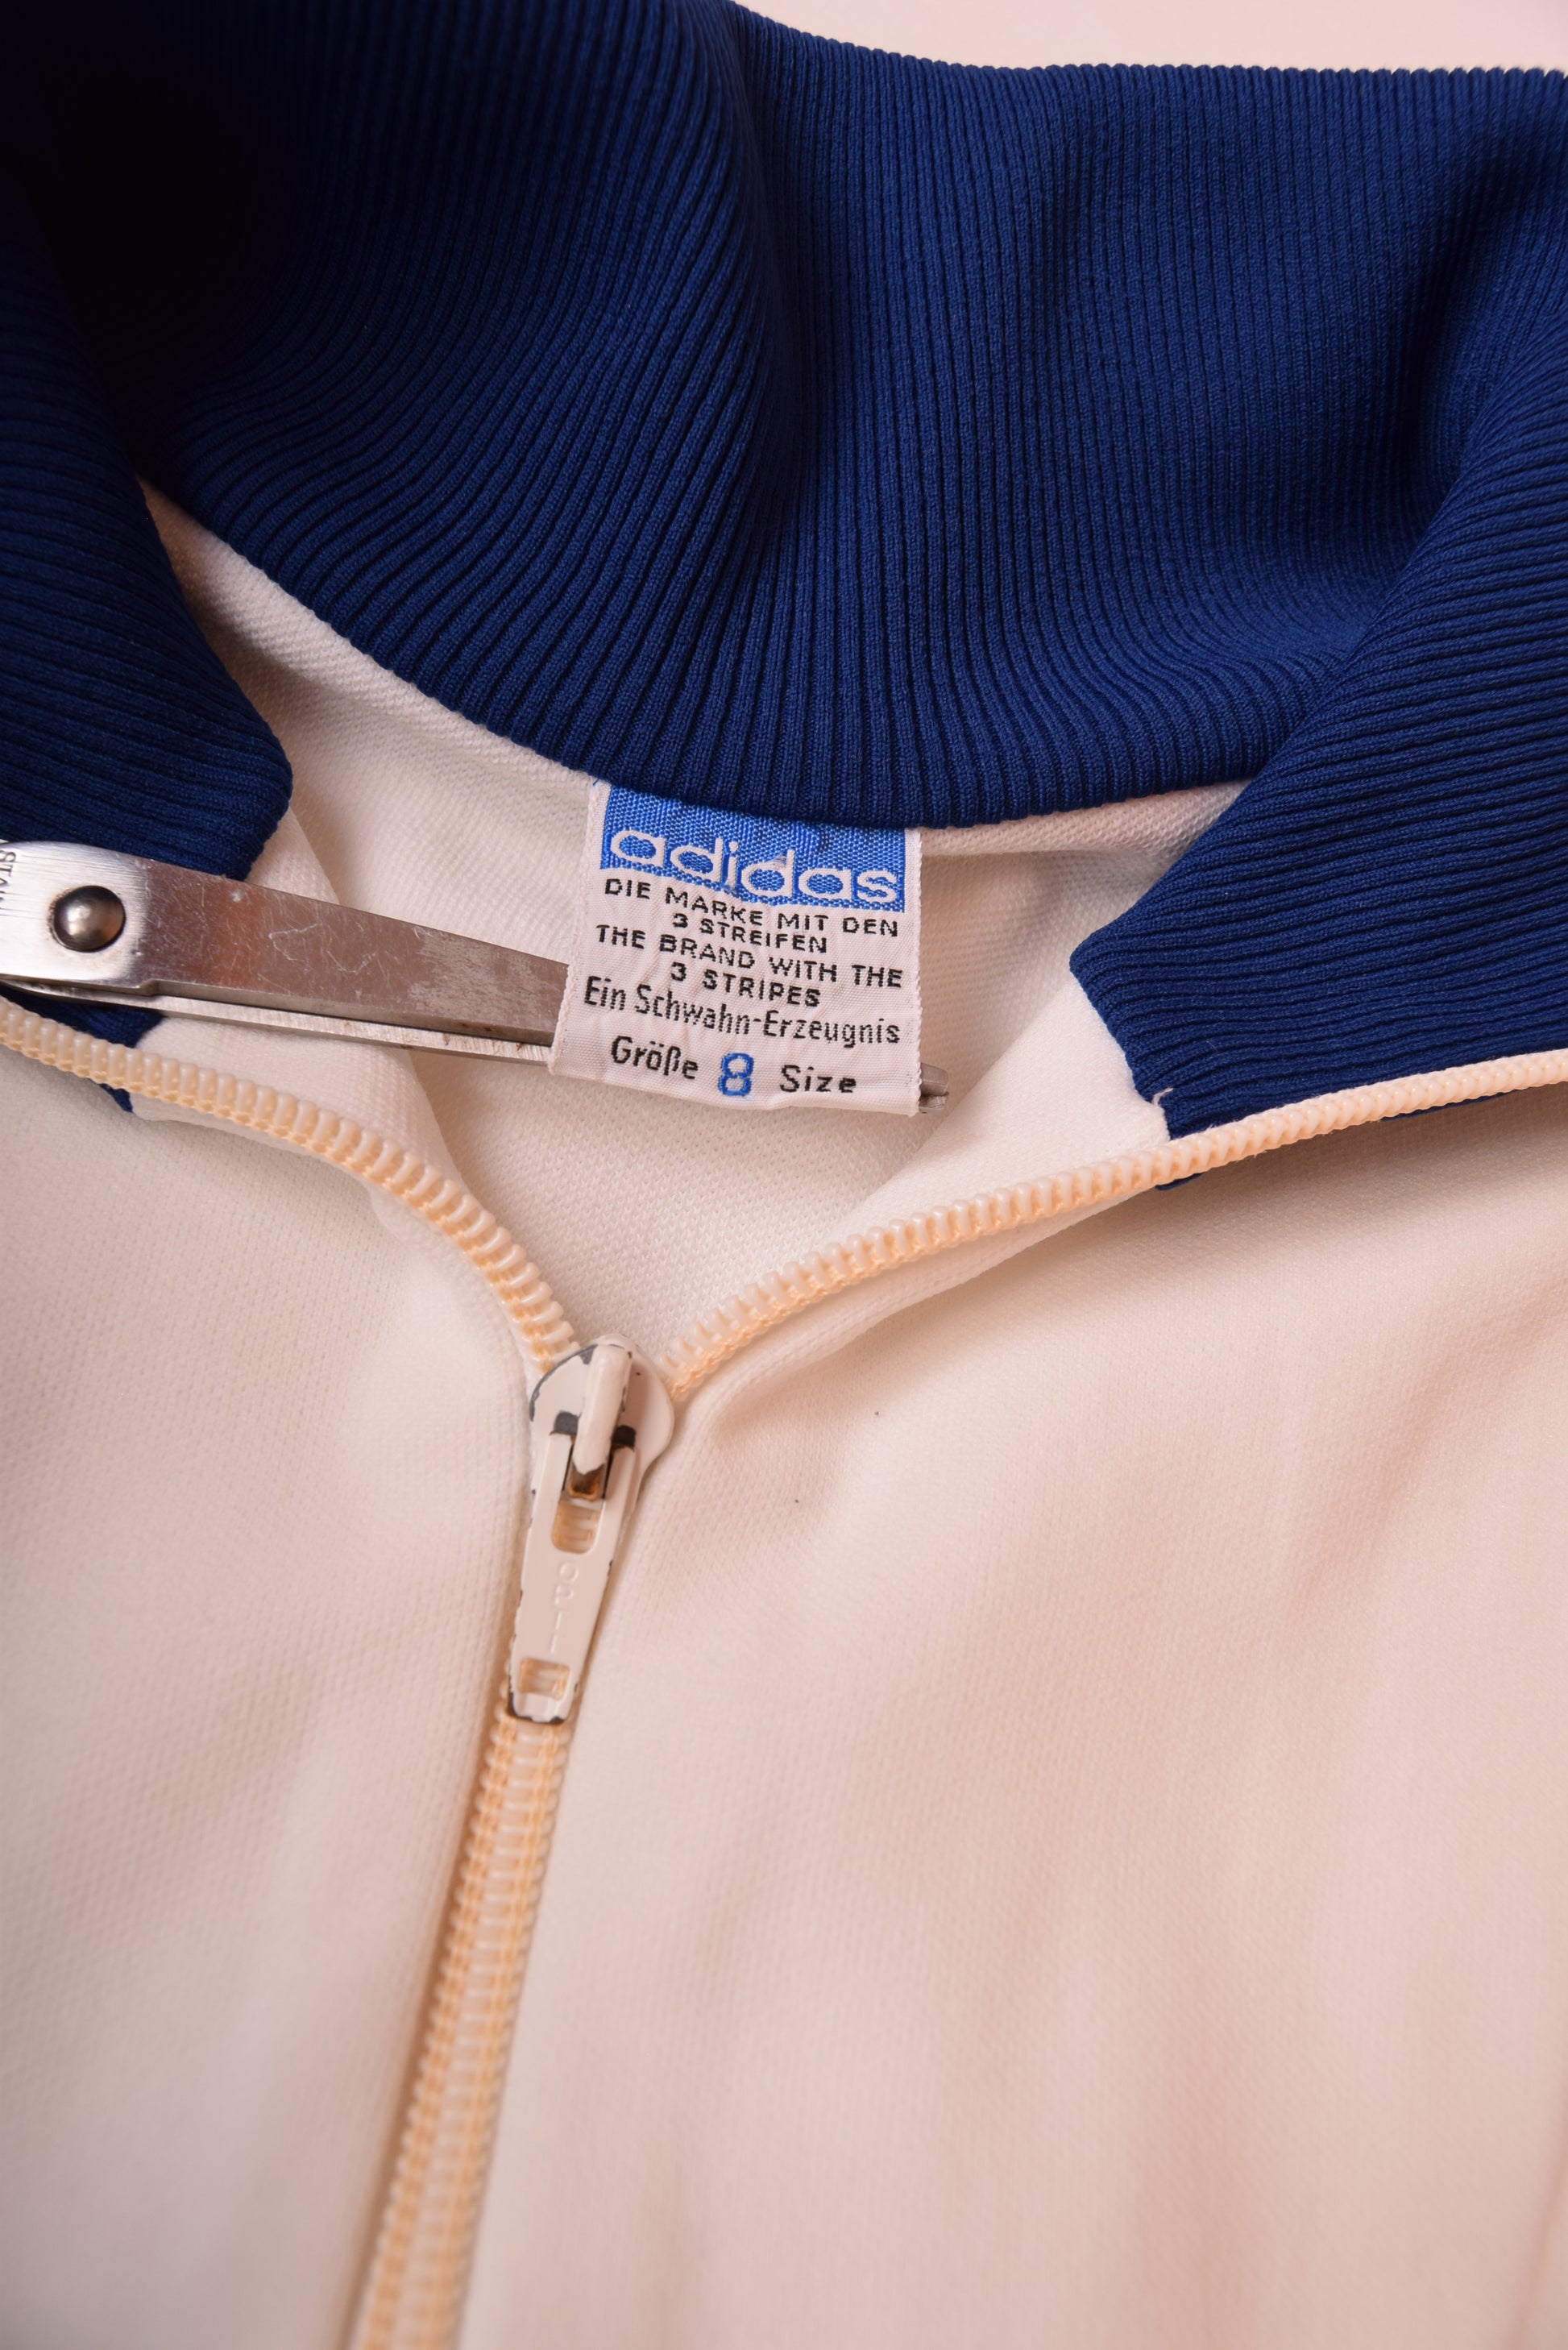 Vintage 70's Adidas Ein Schwahn - Erzeugnis Jacket / Track Top Made in West Germany White Size M-L